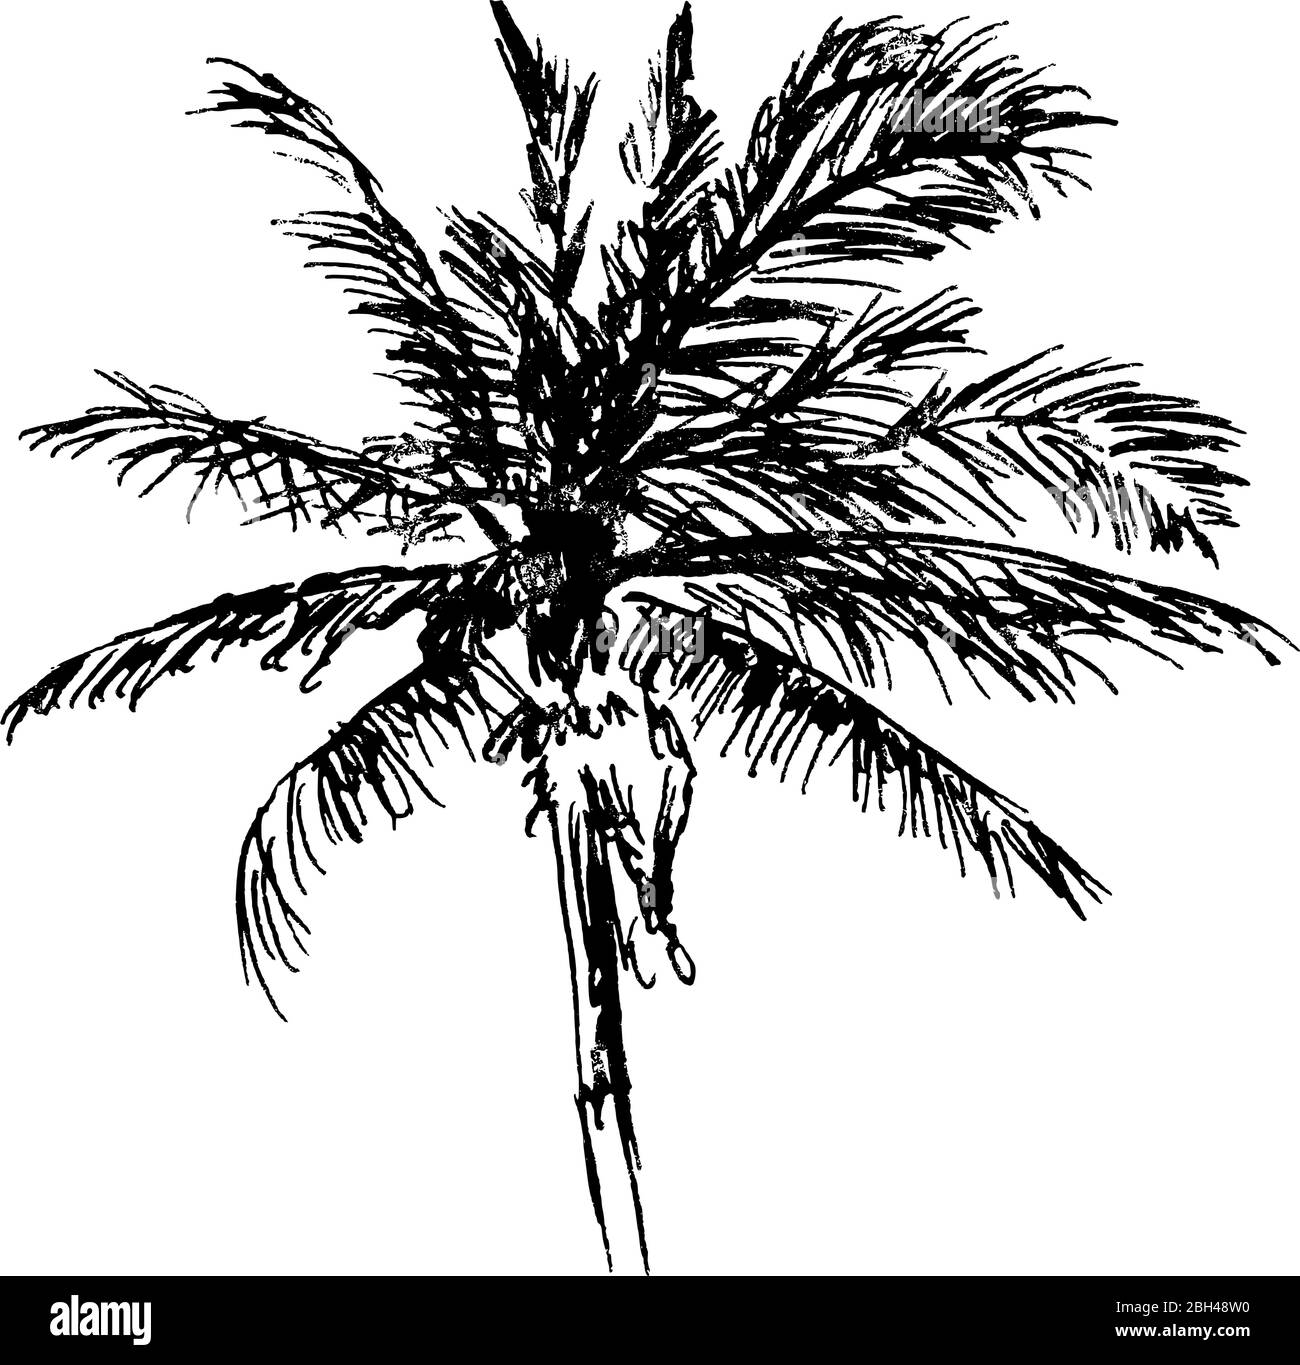 Disegno a inchiostro di un albero di palma - disegno vettoriale naturalistico in bianco e nero Illustrazione Vettoriale